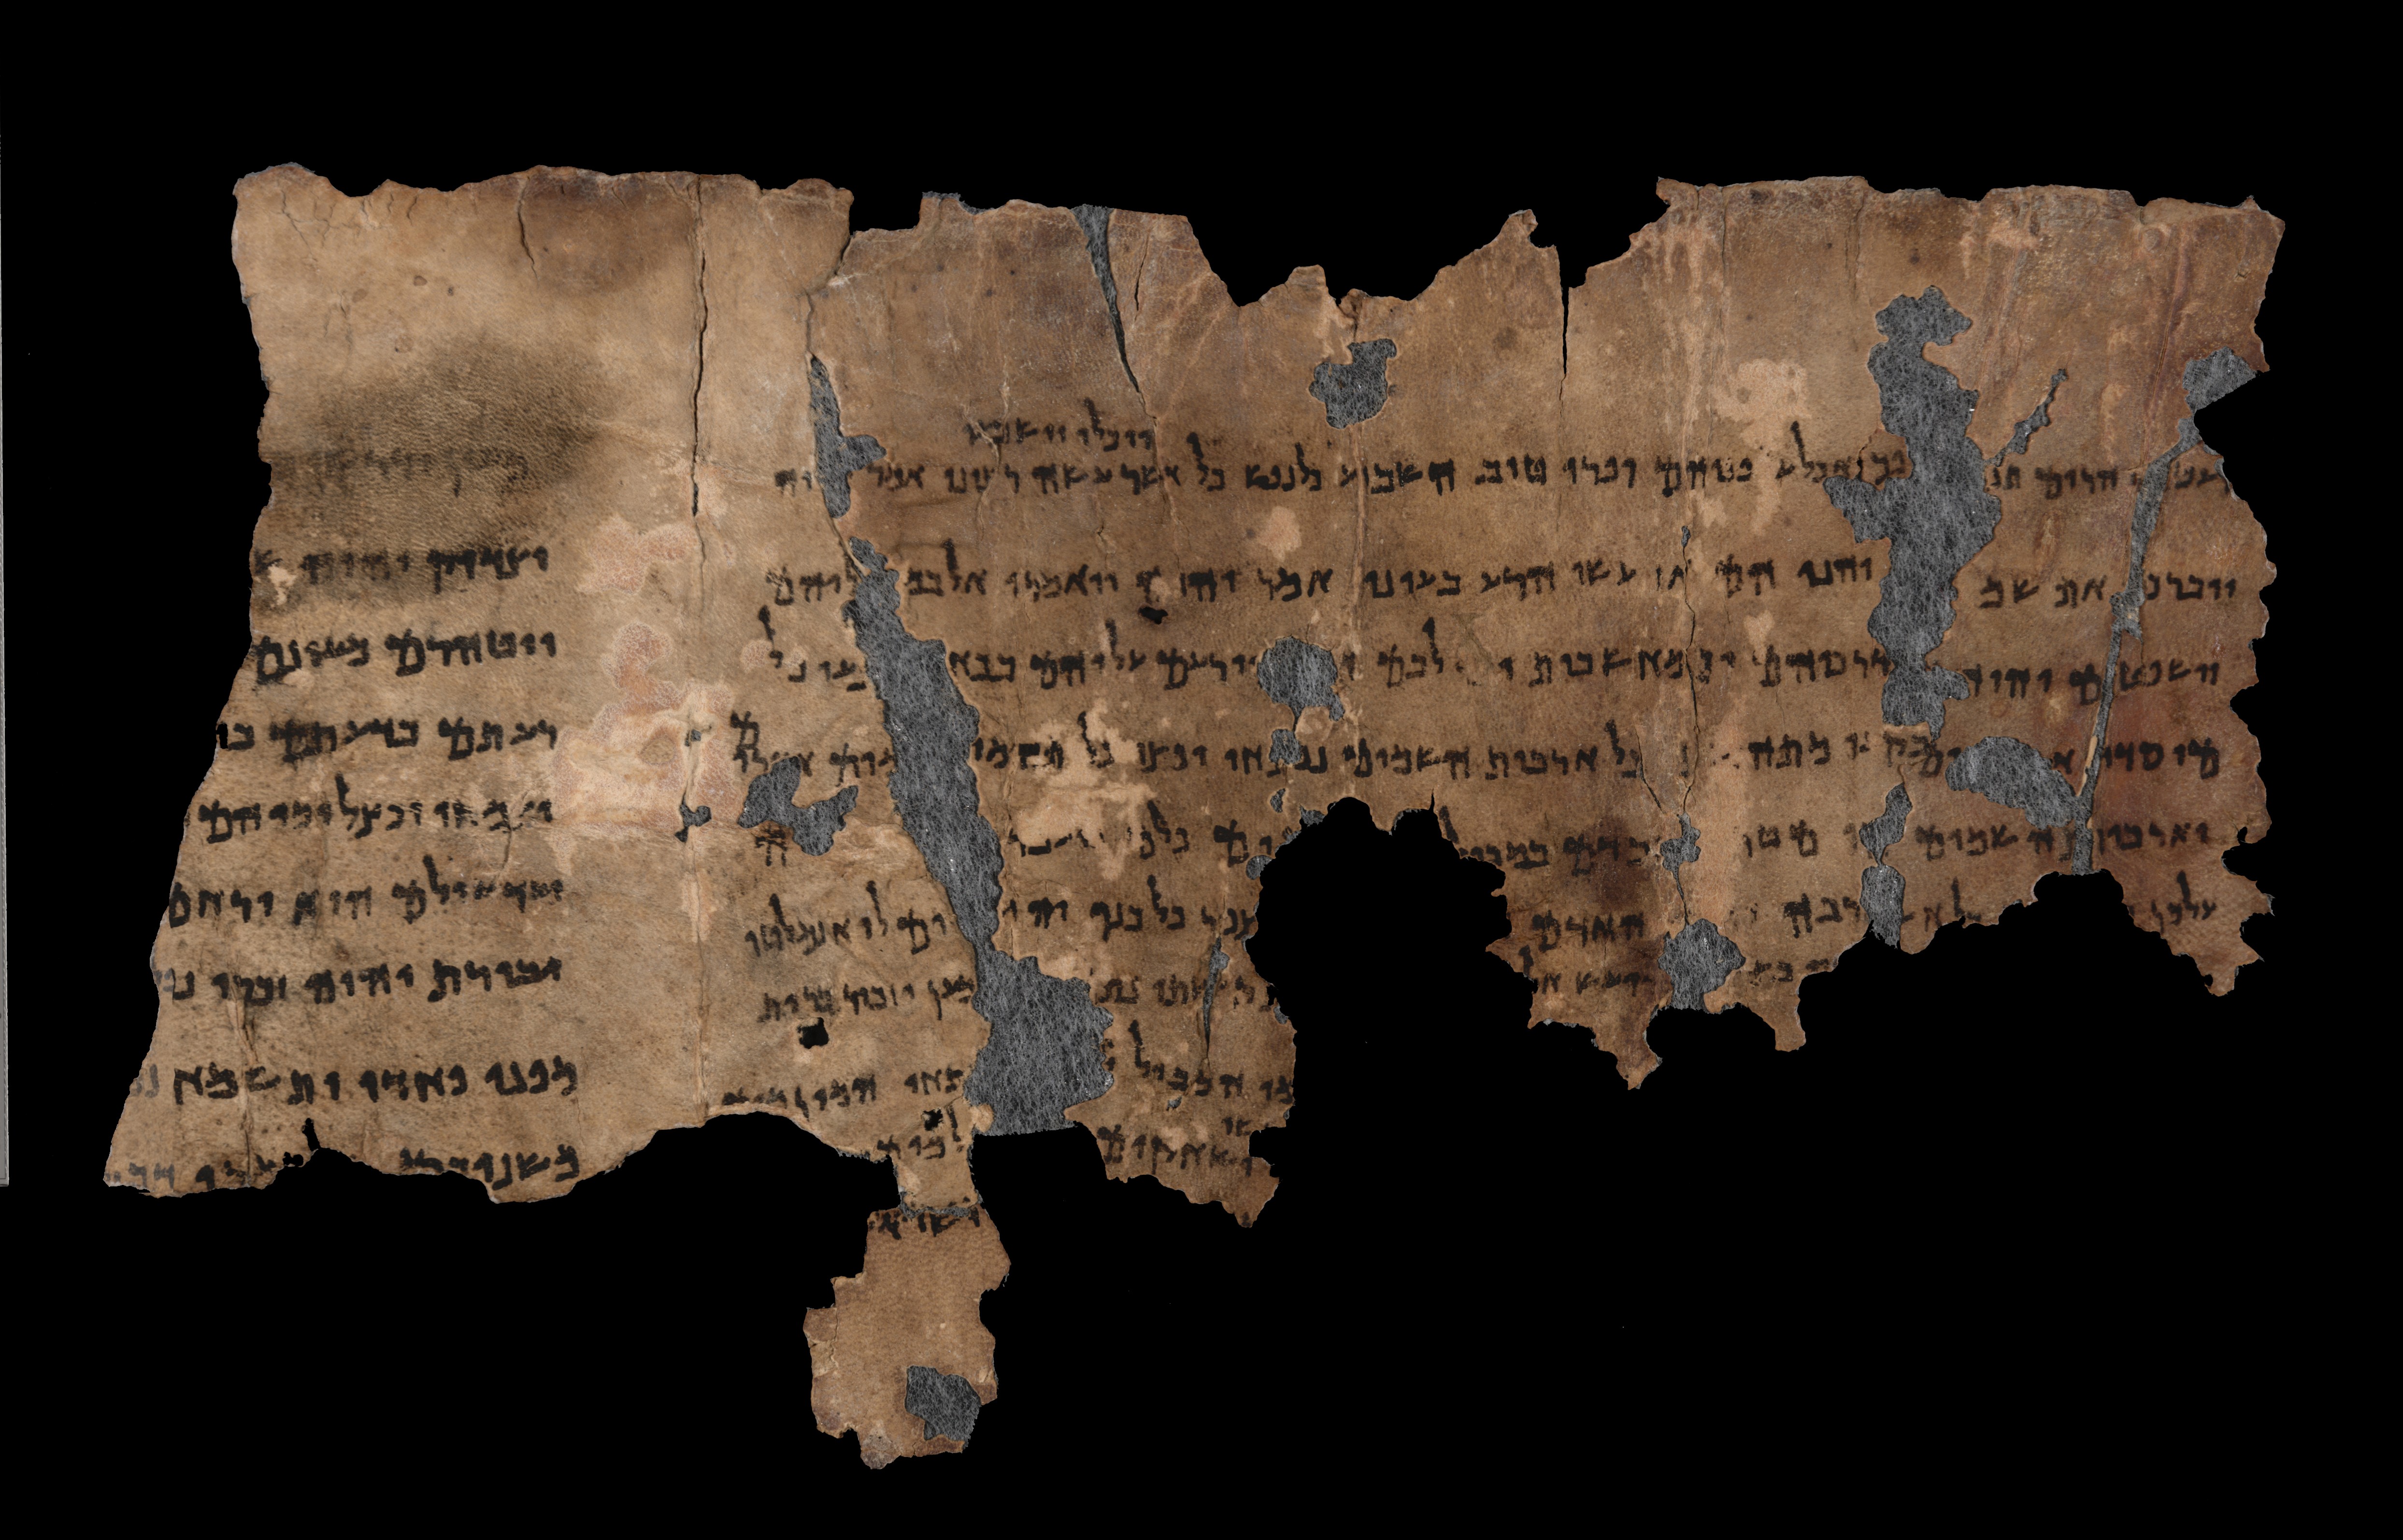 Dead Sea scrolls on exhibition in Assen